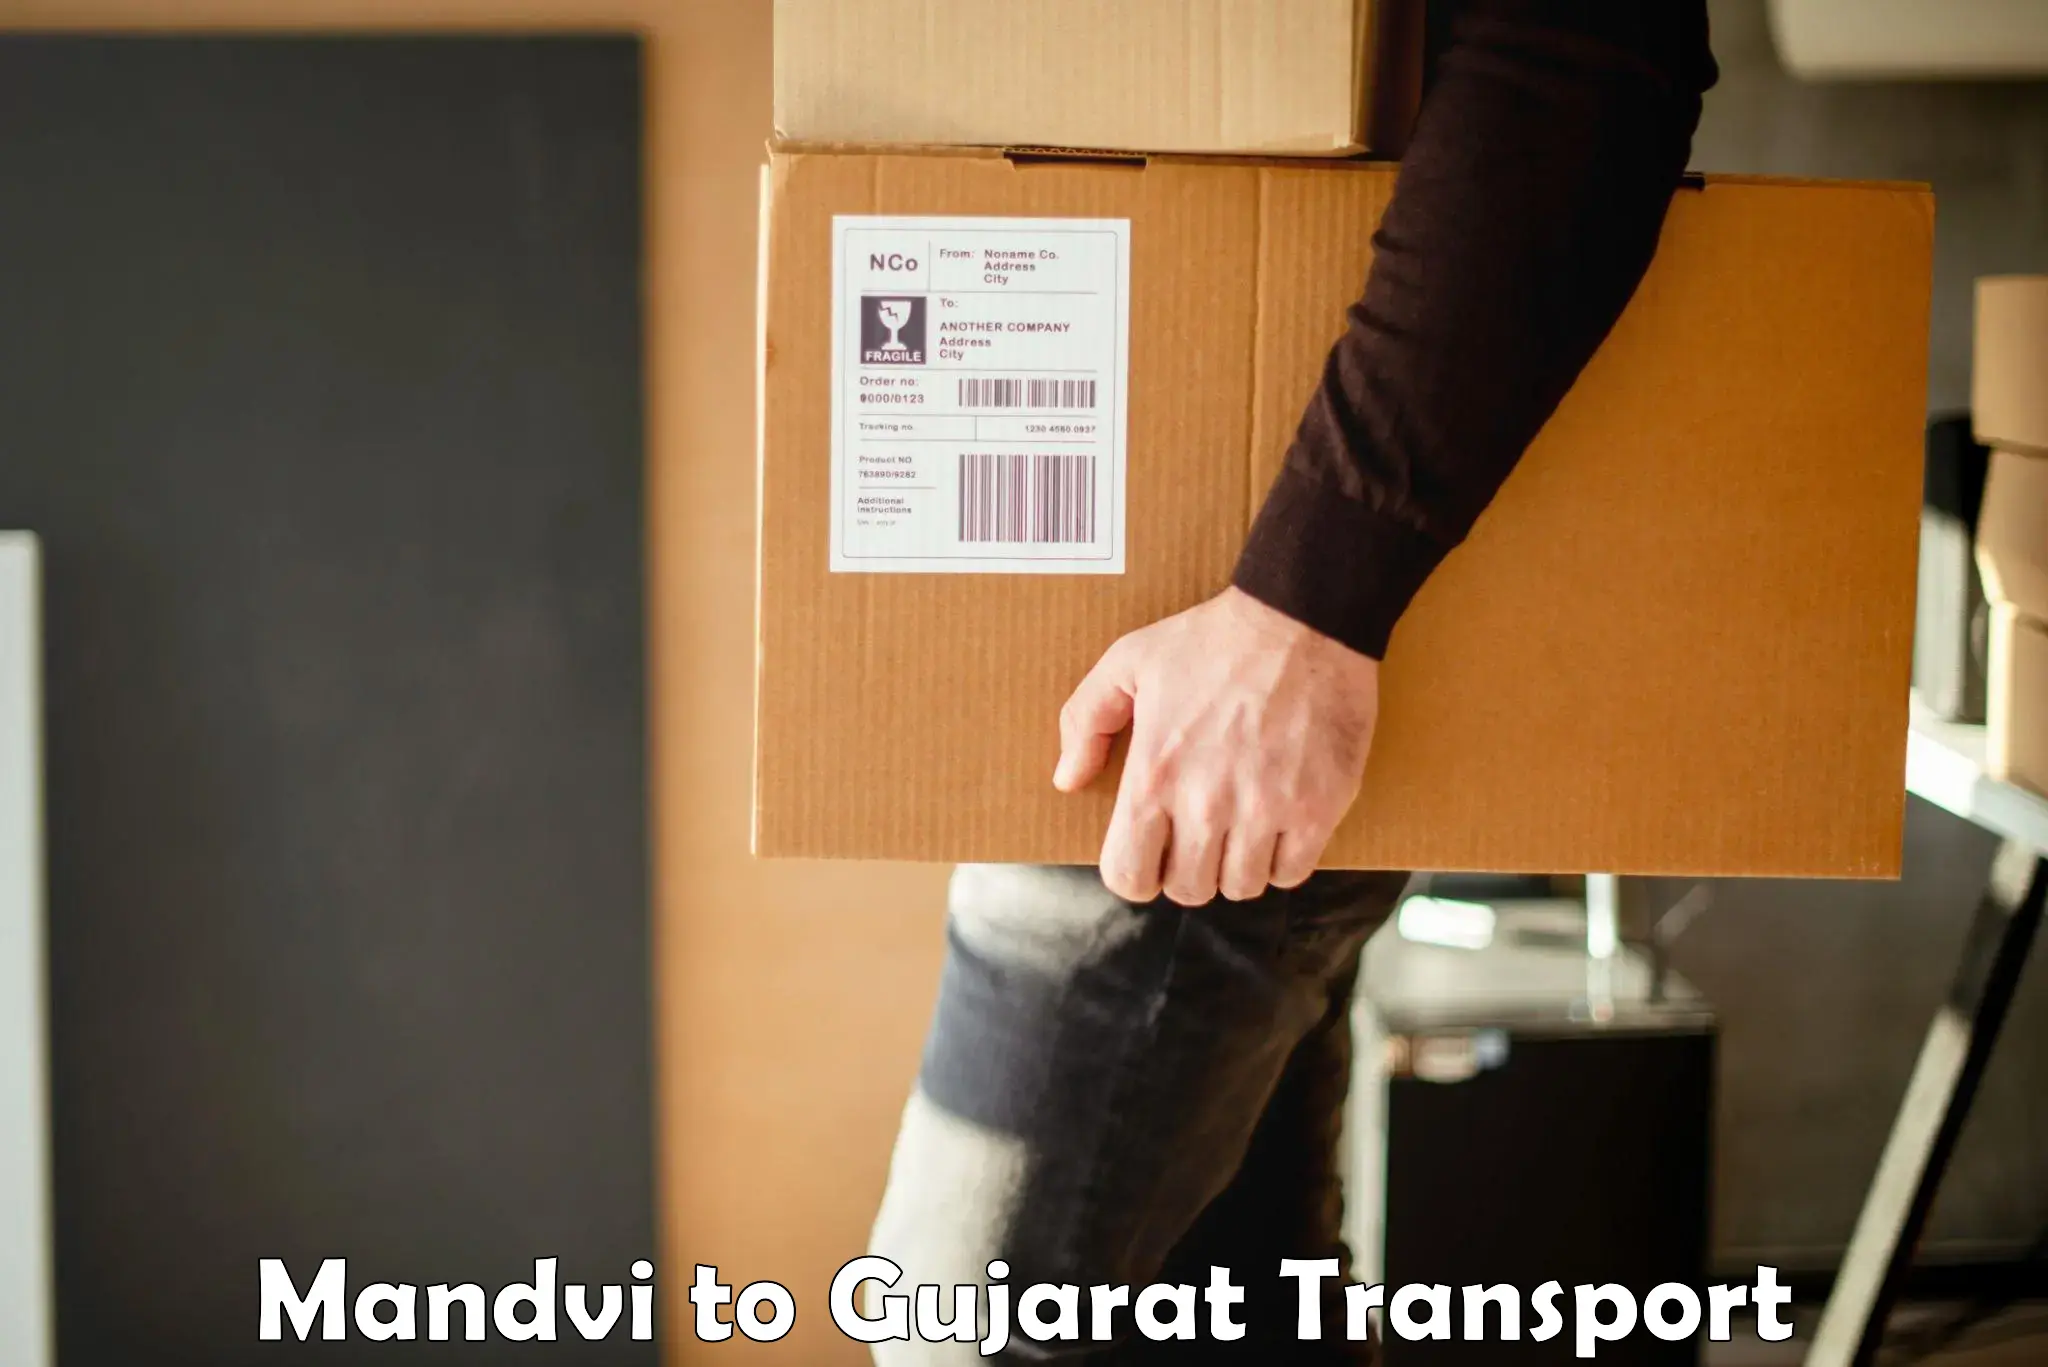 Cargo transport services Mandvi to Porbandar